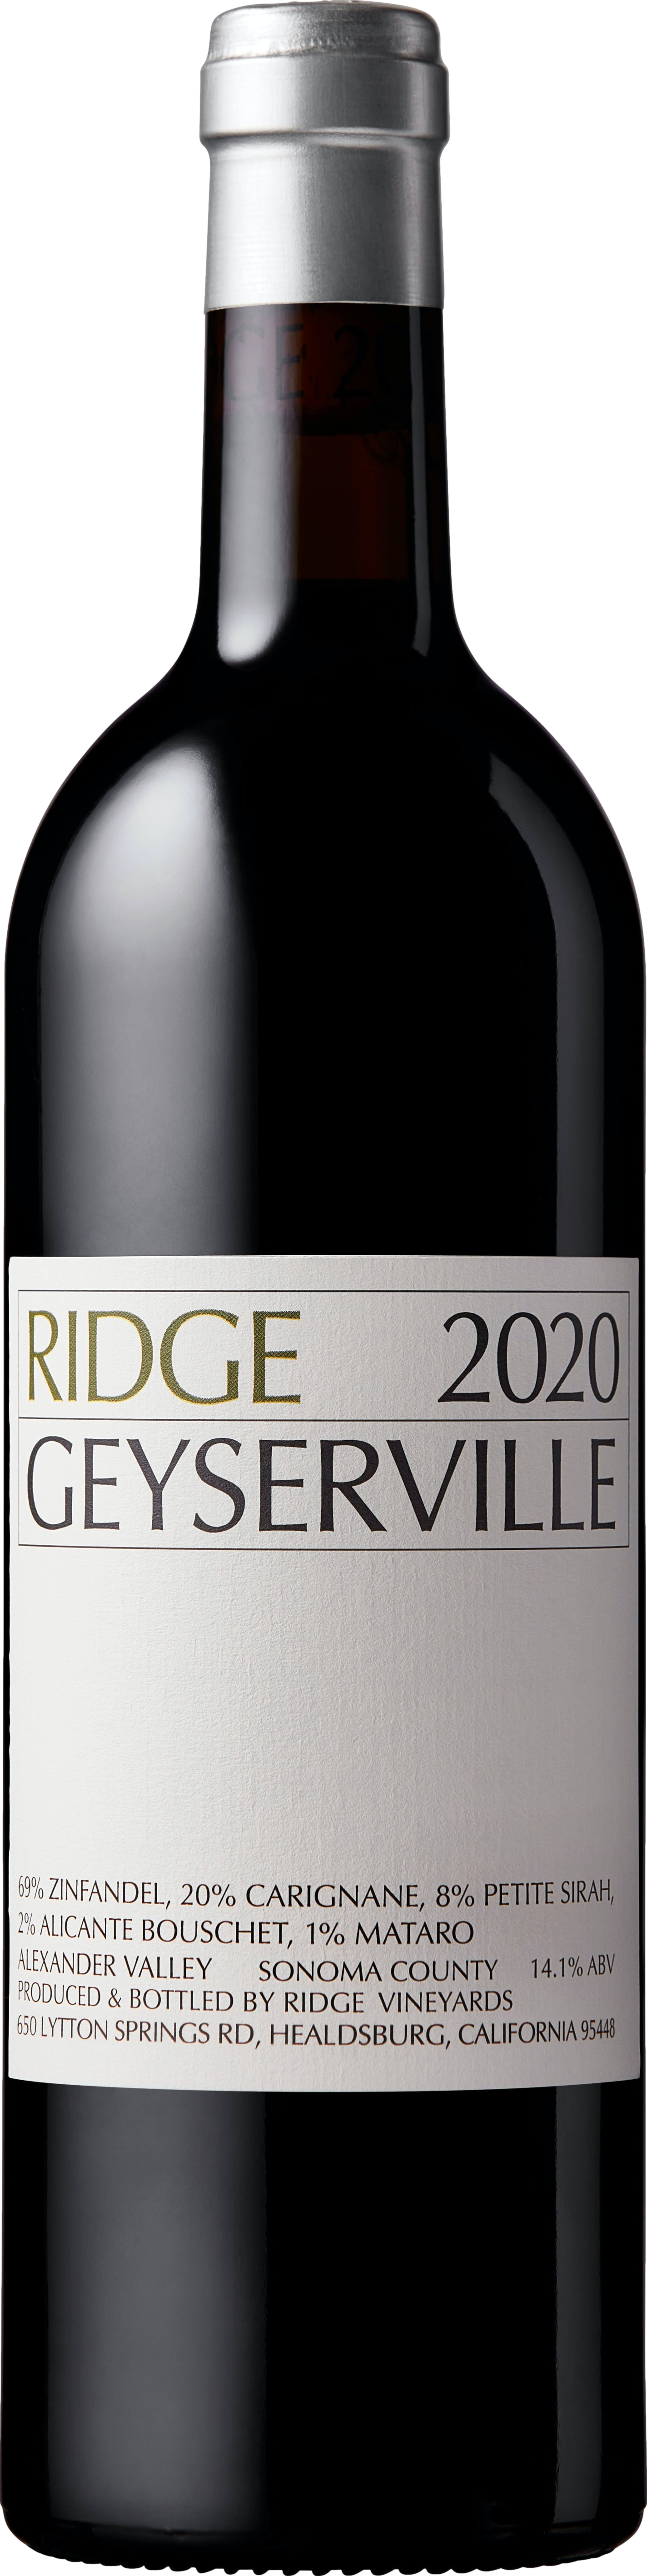 Ridge Geyserville 2020 Červené 14.5% 0.75 l